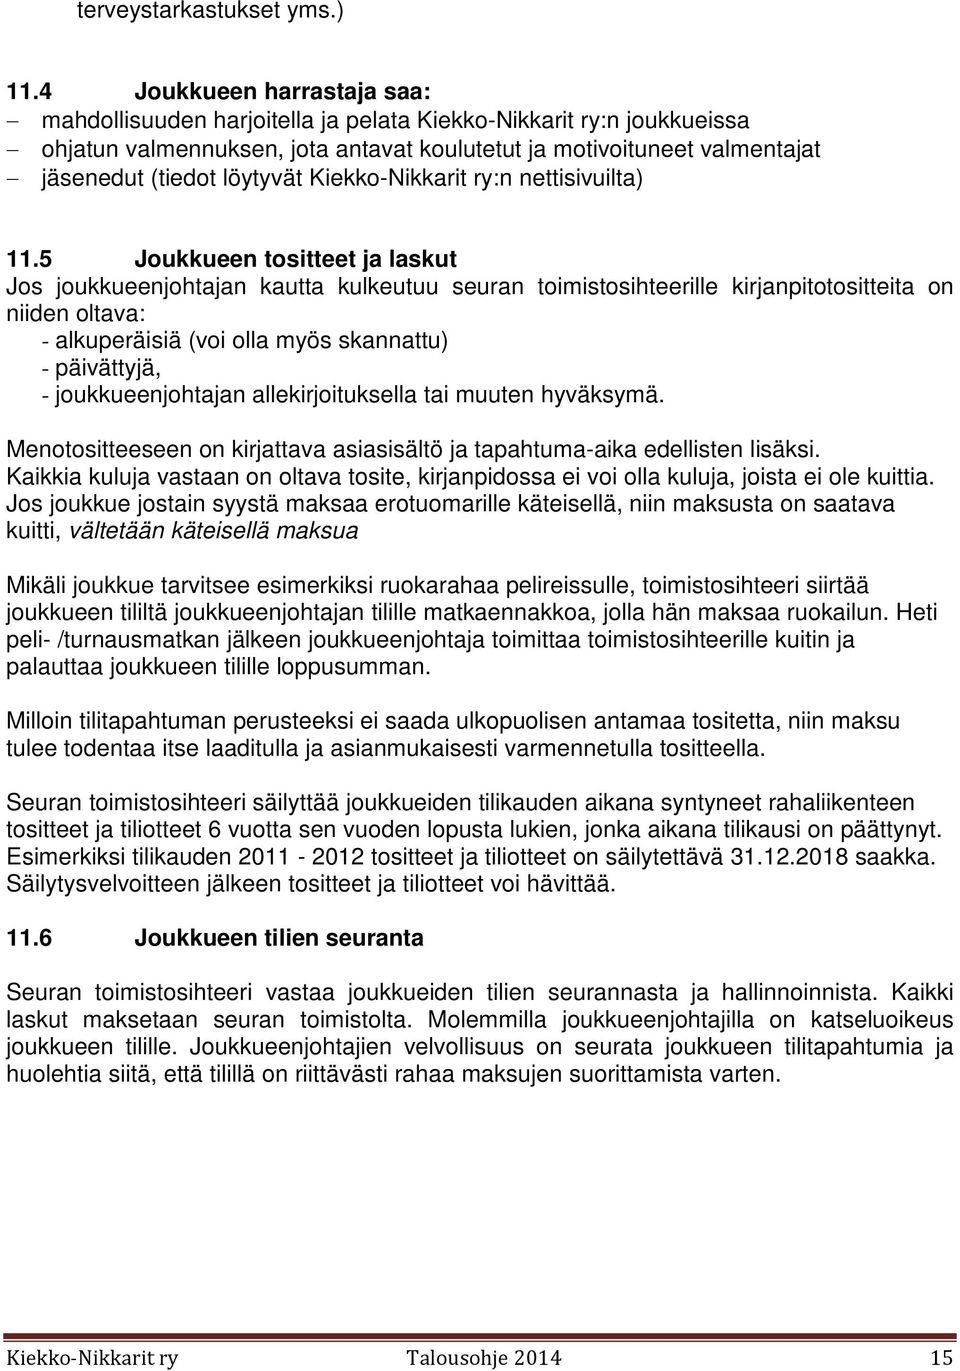 Kiekko-Nikkarit ry:n nettisivuilta) 11.